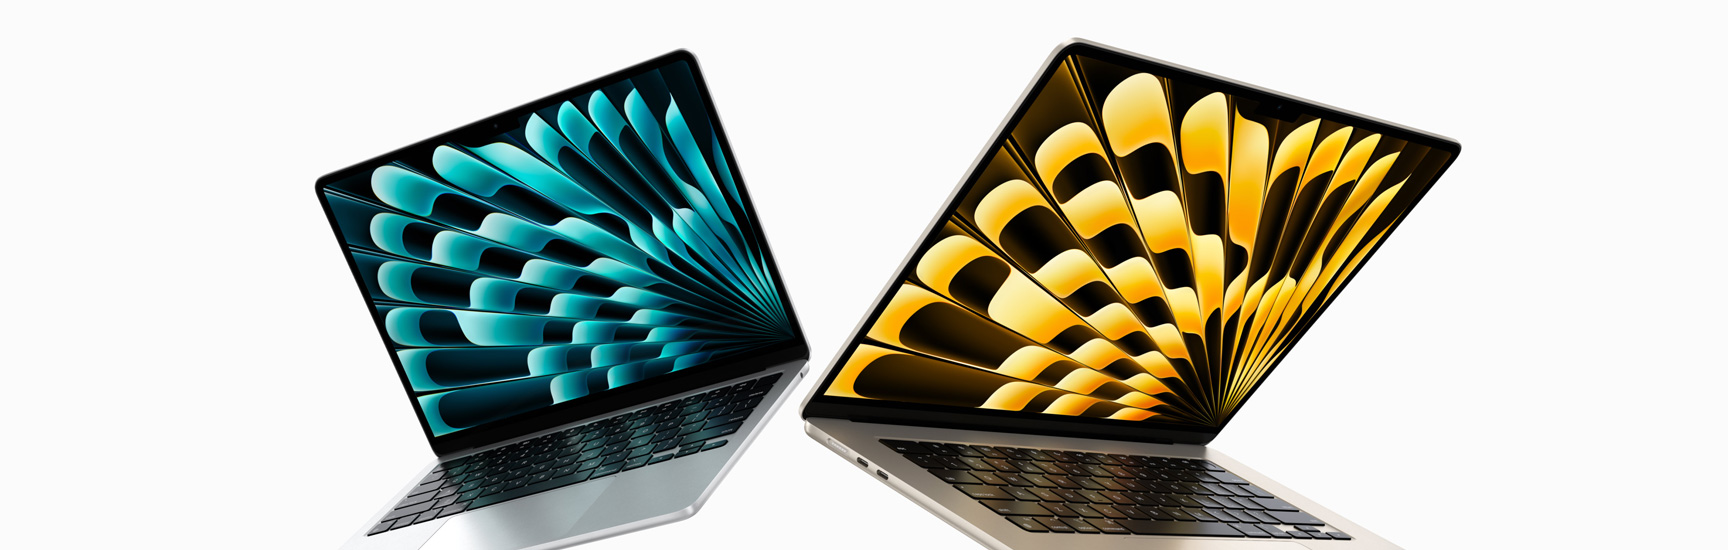 13 tuuman ja 15 tuuman hopeanväriset ja tähtivalkeat MacBook Air ‑mallit edestä osittain avoinna, kuvassa esitellään näyttöjen kokoeroa.